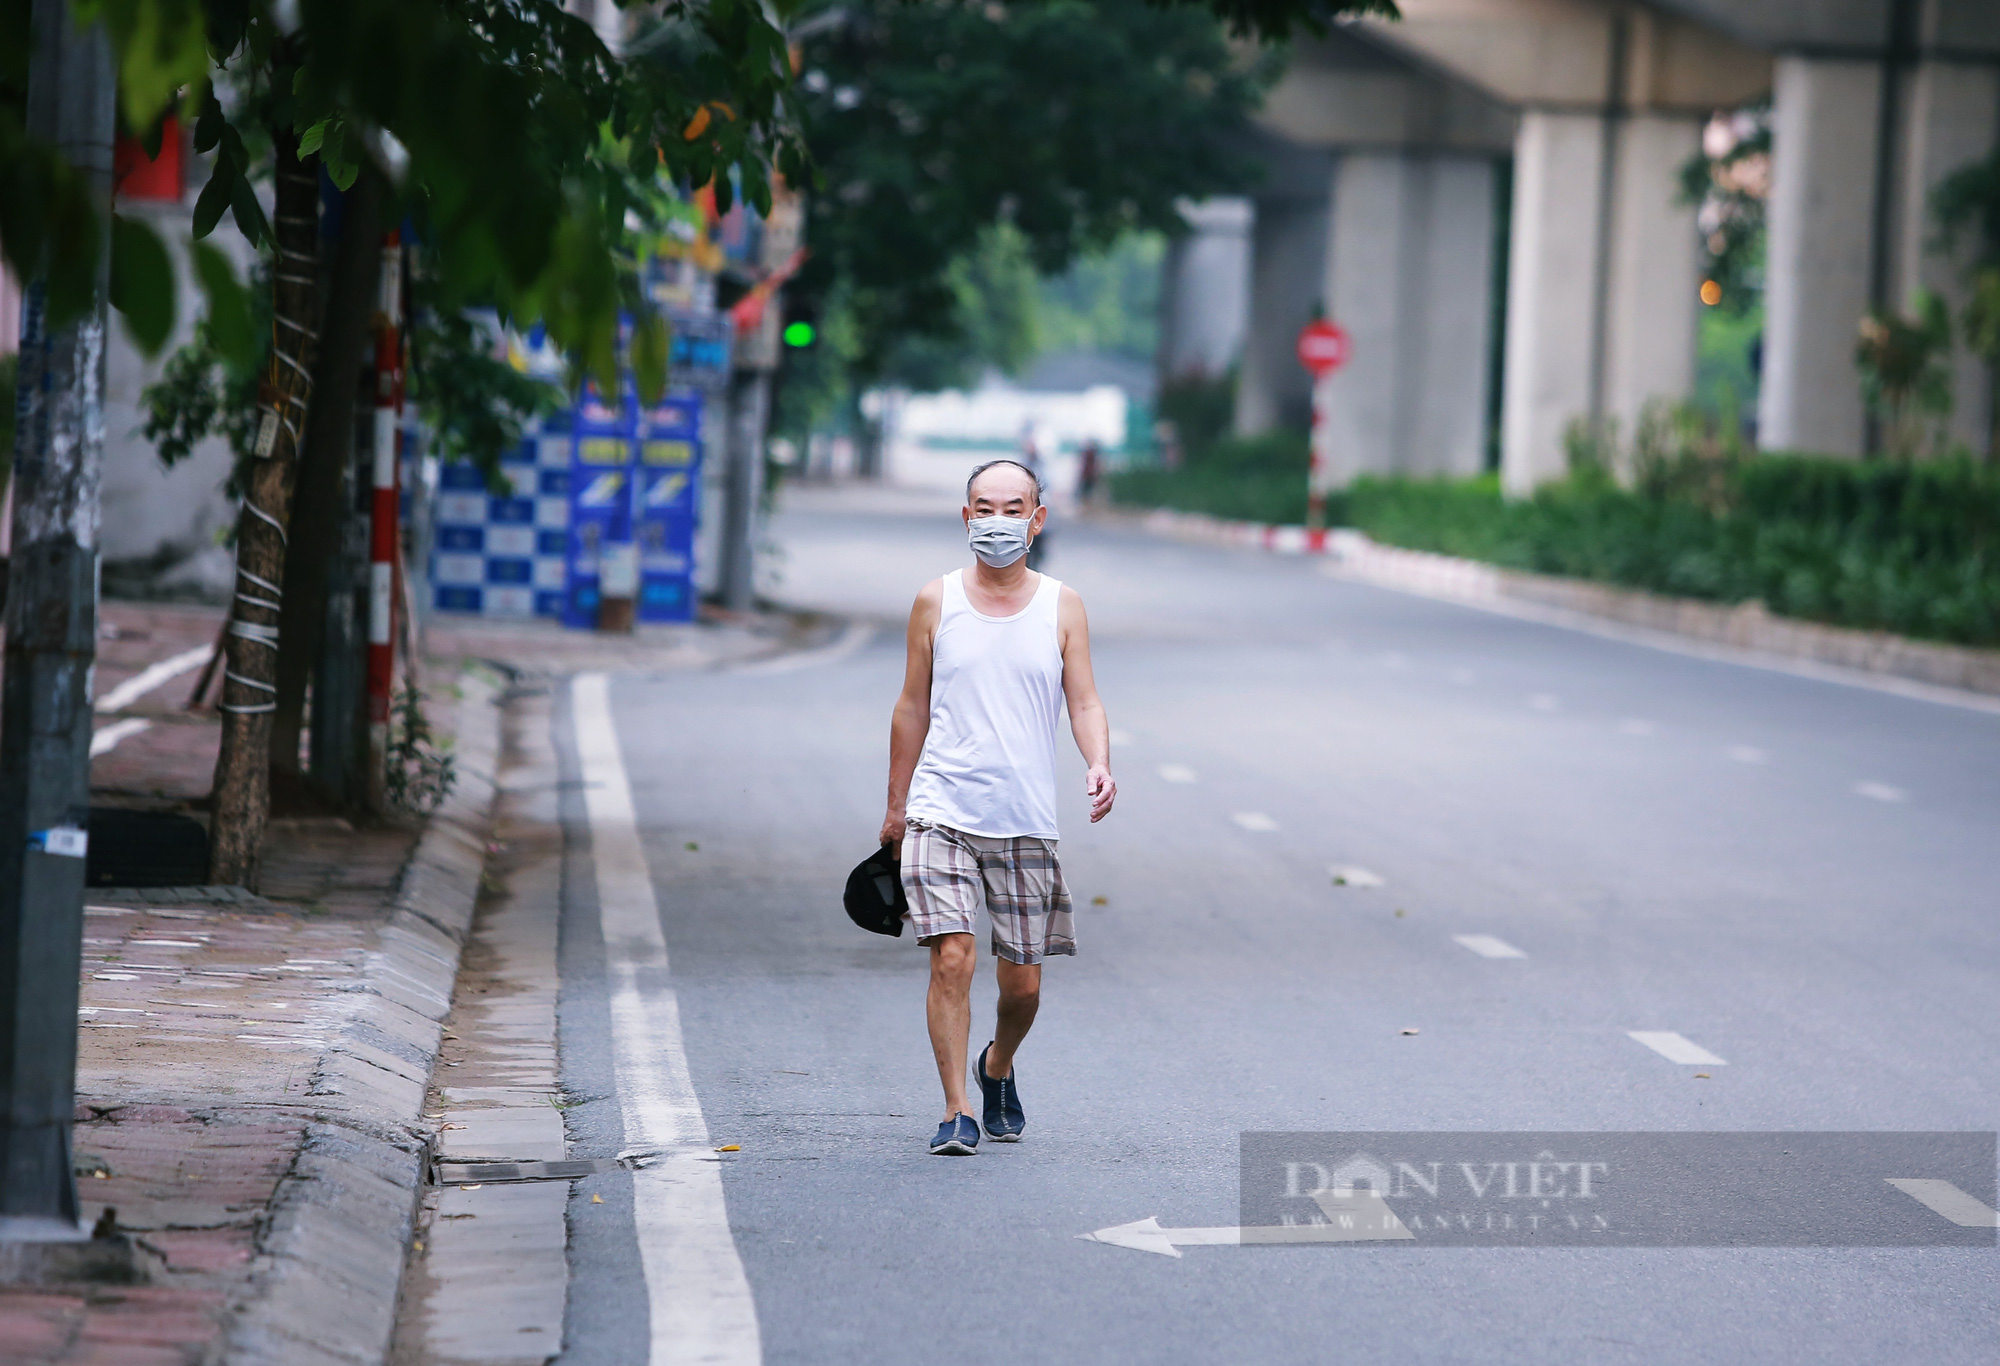 Hà Nội: Nhiều người dân vẫn lơ là chống dịch, thản nhiên luyện tập thể dục ngoài đường phố - Ảnh 7.